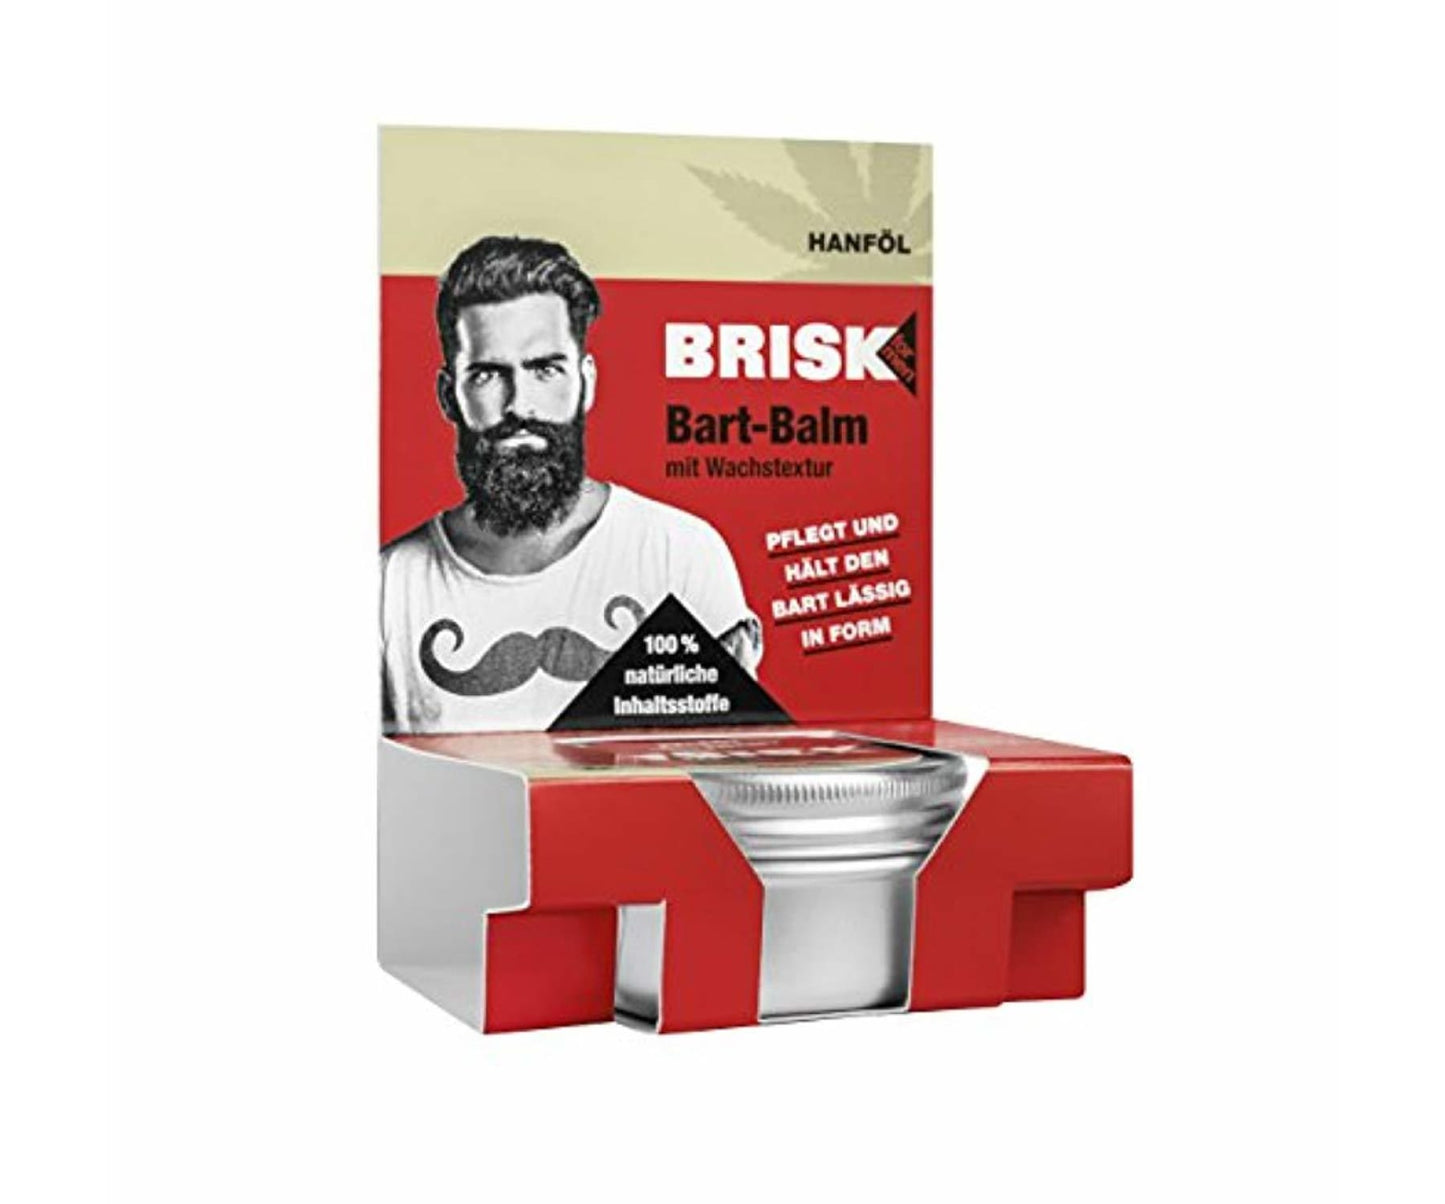 Brisk - BRISK Bart Balm mit Wachstextur und Hanföl Bartpflege 2er Pack